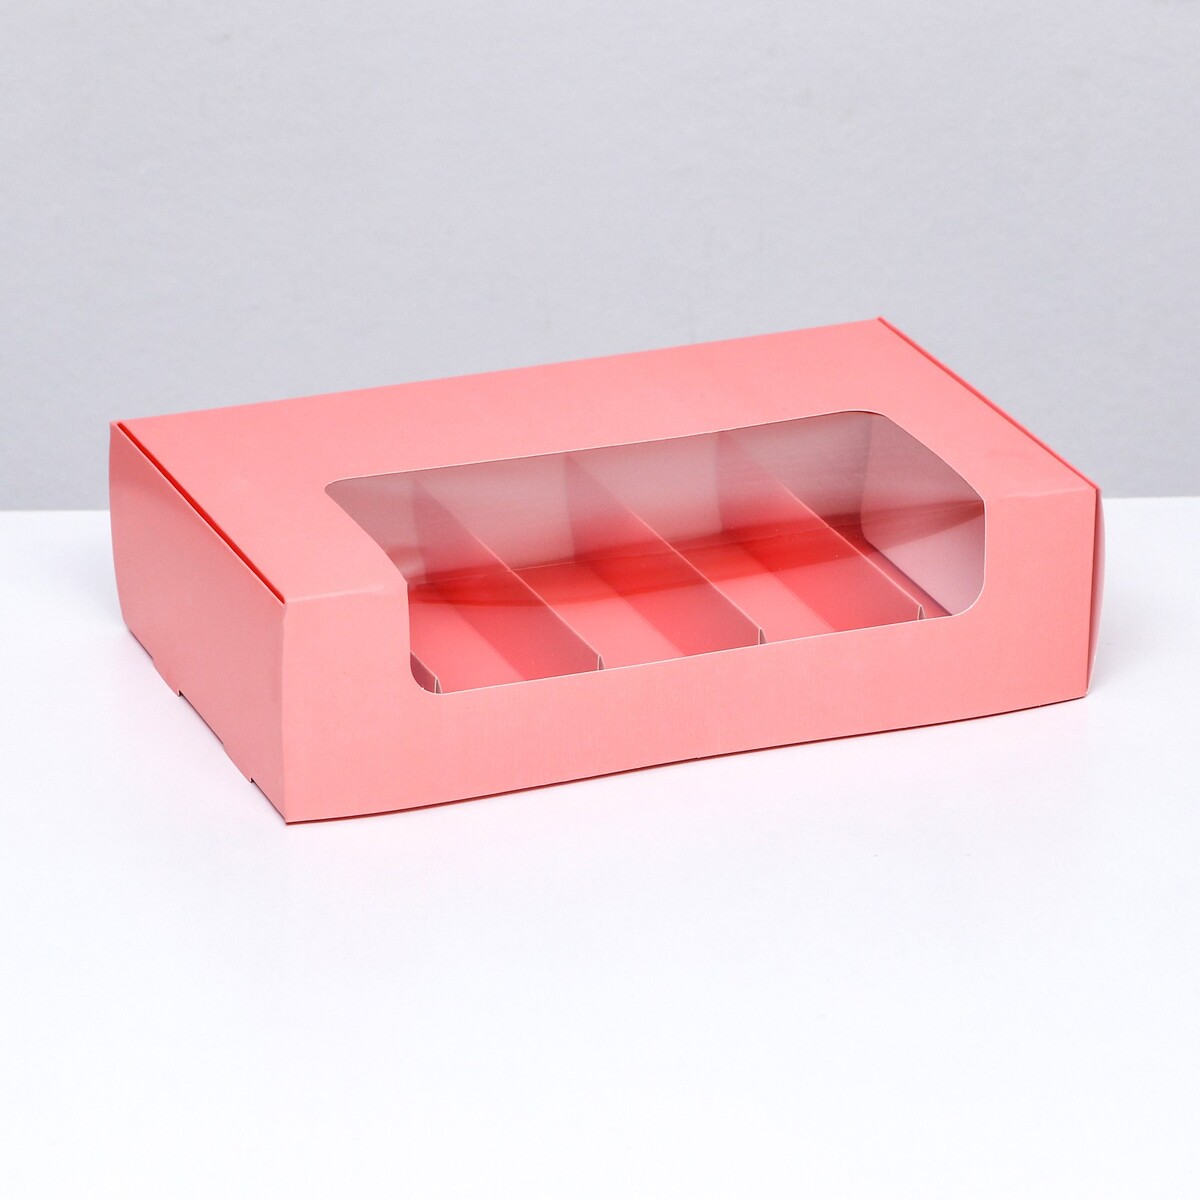 Коробка складная, под 5 эклеров розовый, 25 х 15 х 6,6 см коробка для ов с вазой и pvc окнами складная розовый 23 х 30 х 23 см